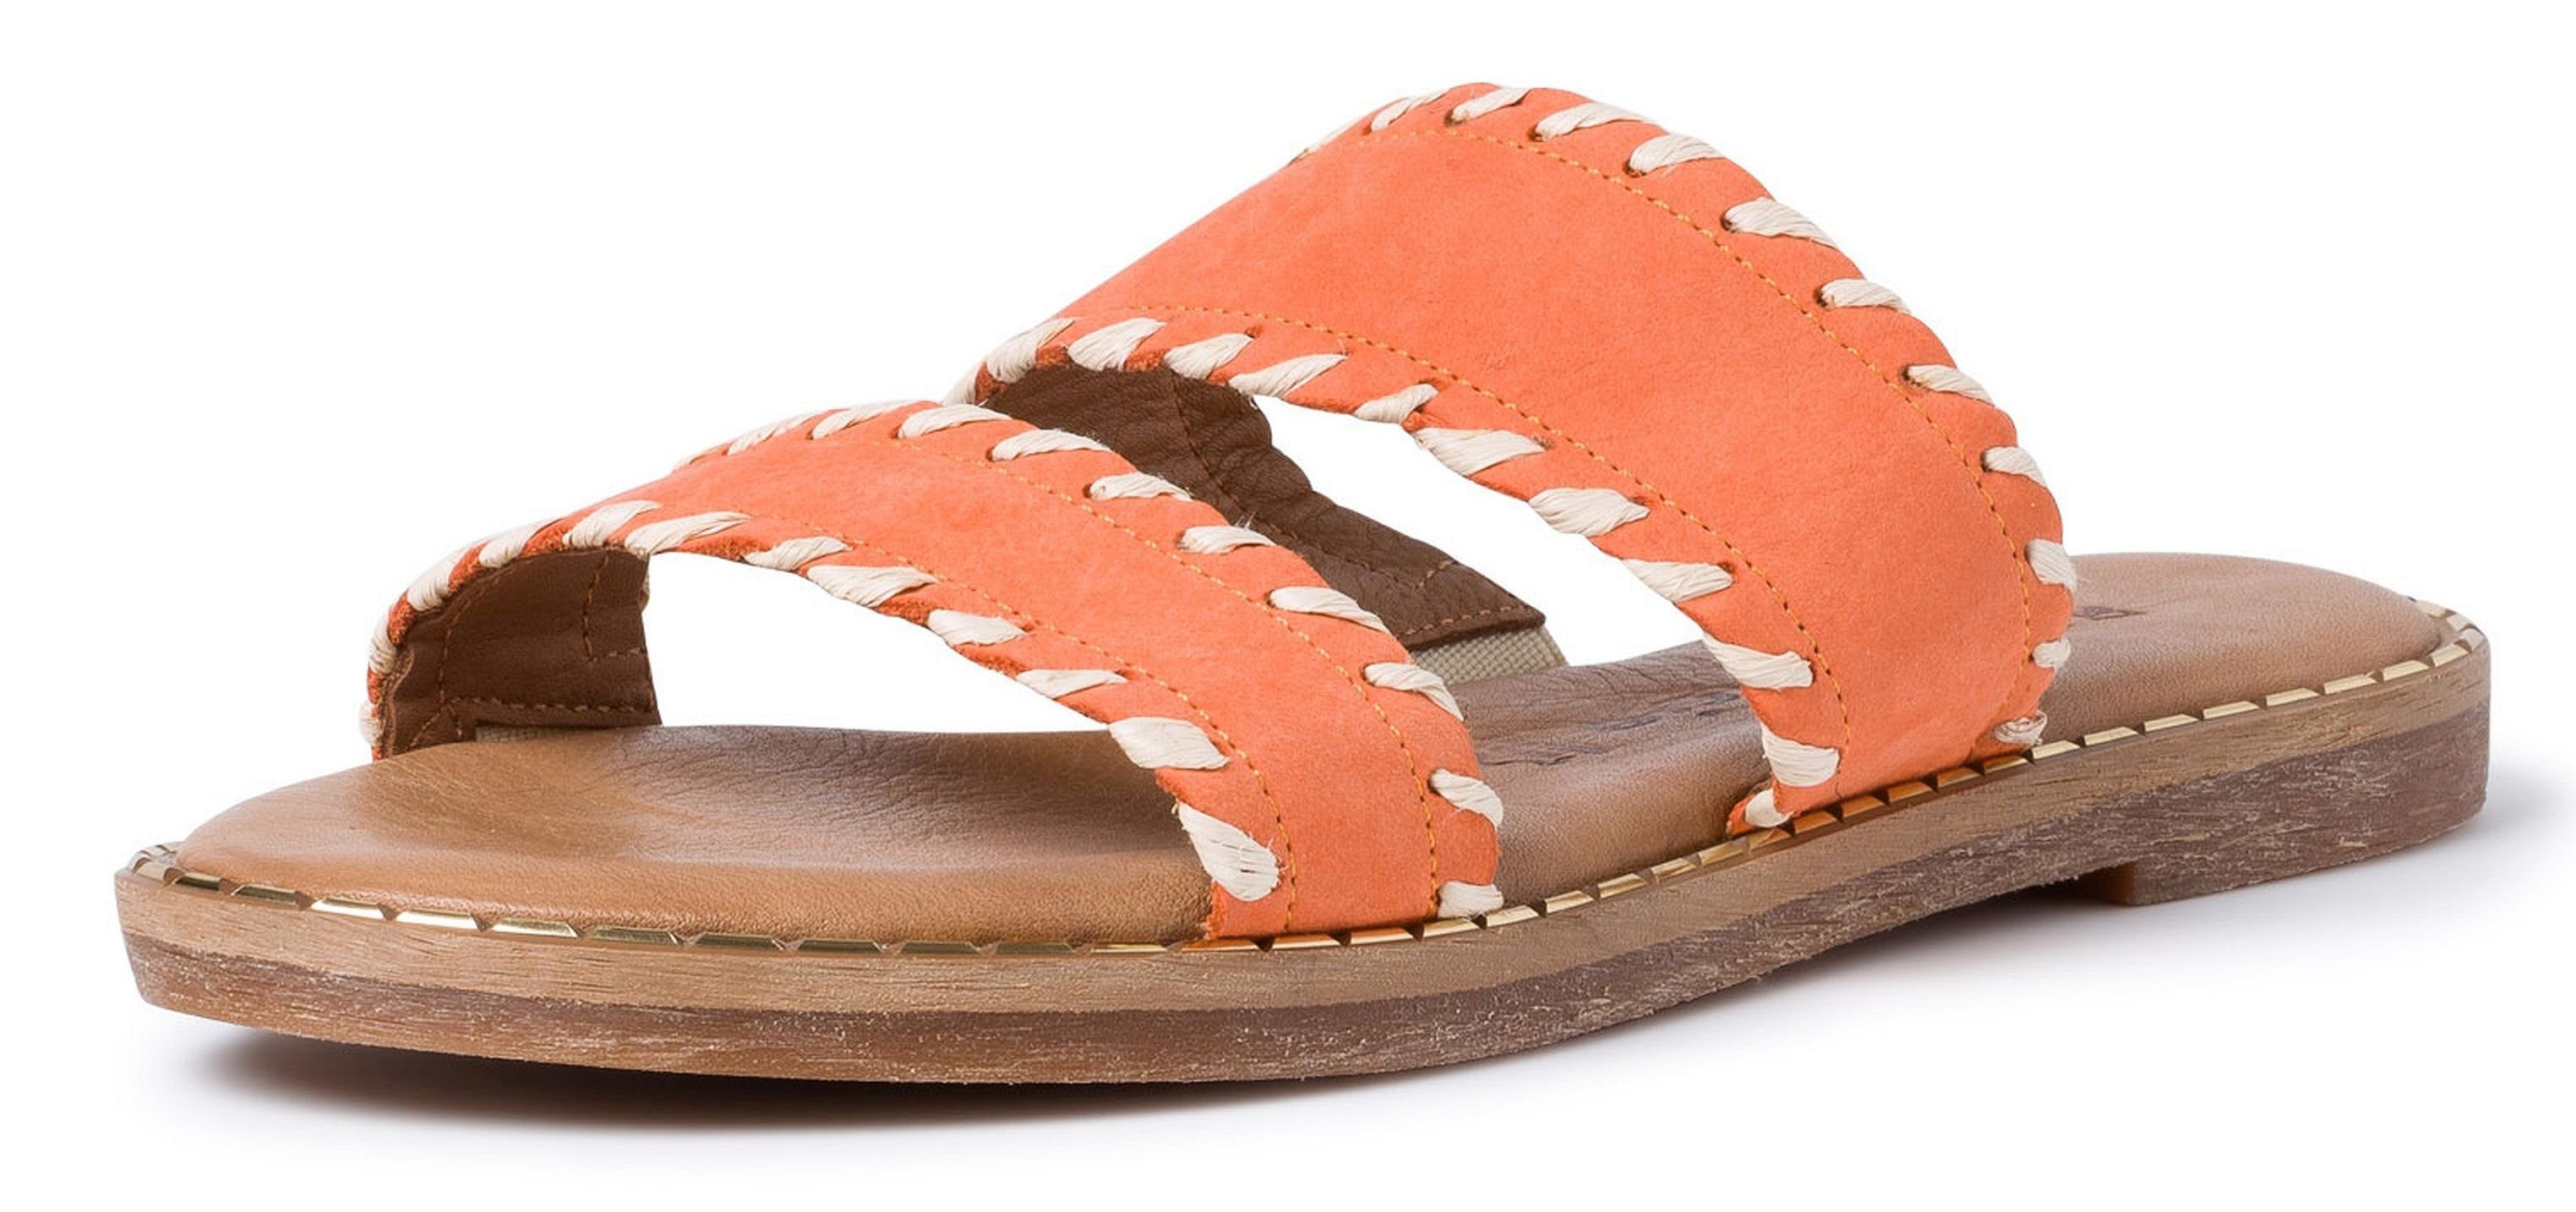 Tamaris »1-27128-34 Sandaletten 620 Sunset« Sandale online kaufen | OTTO